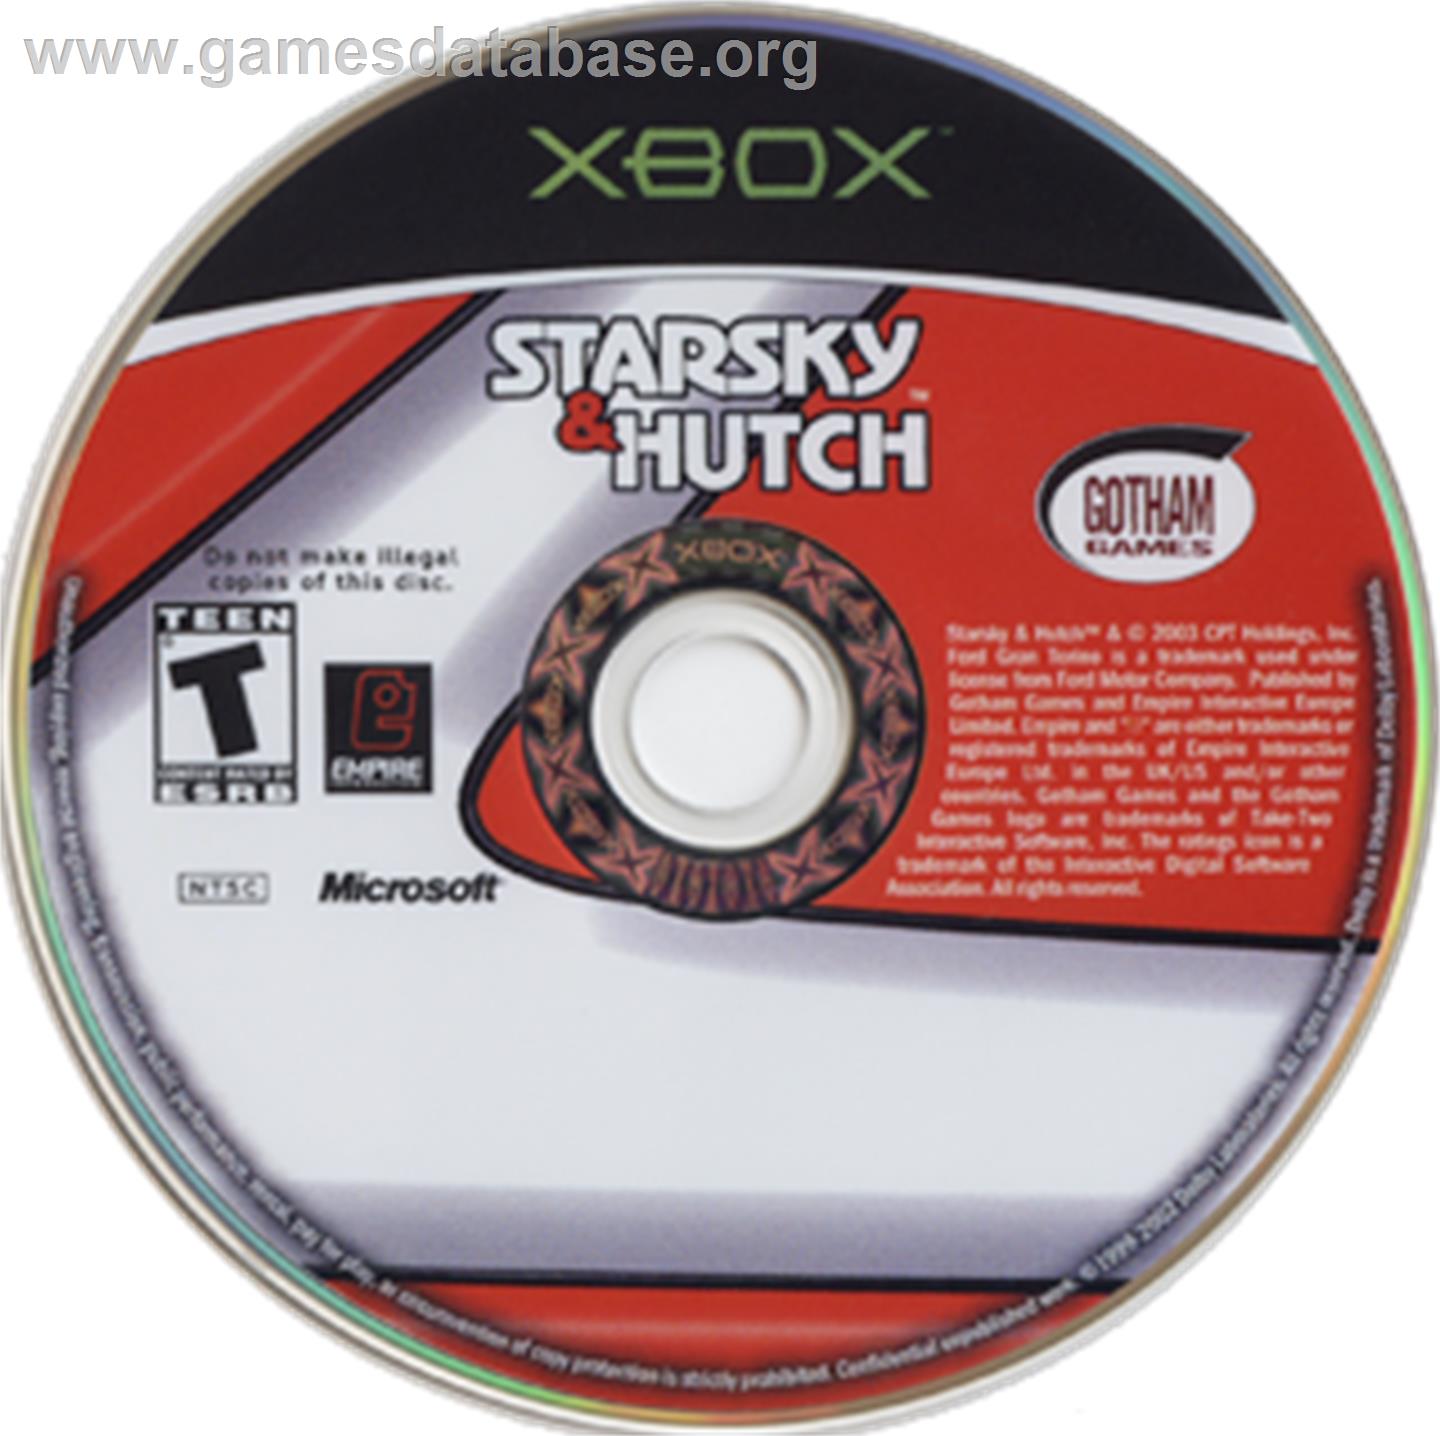 Starsky & Hutch - Microsoft Xbox - Artwork - CD